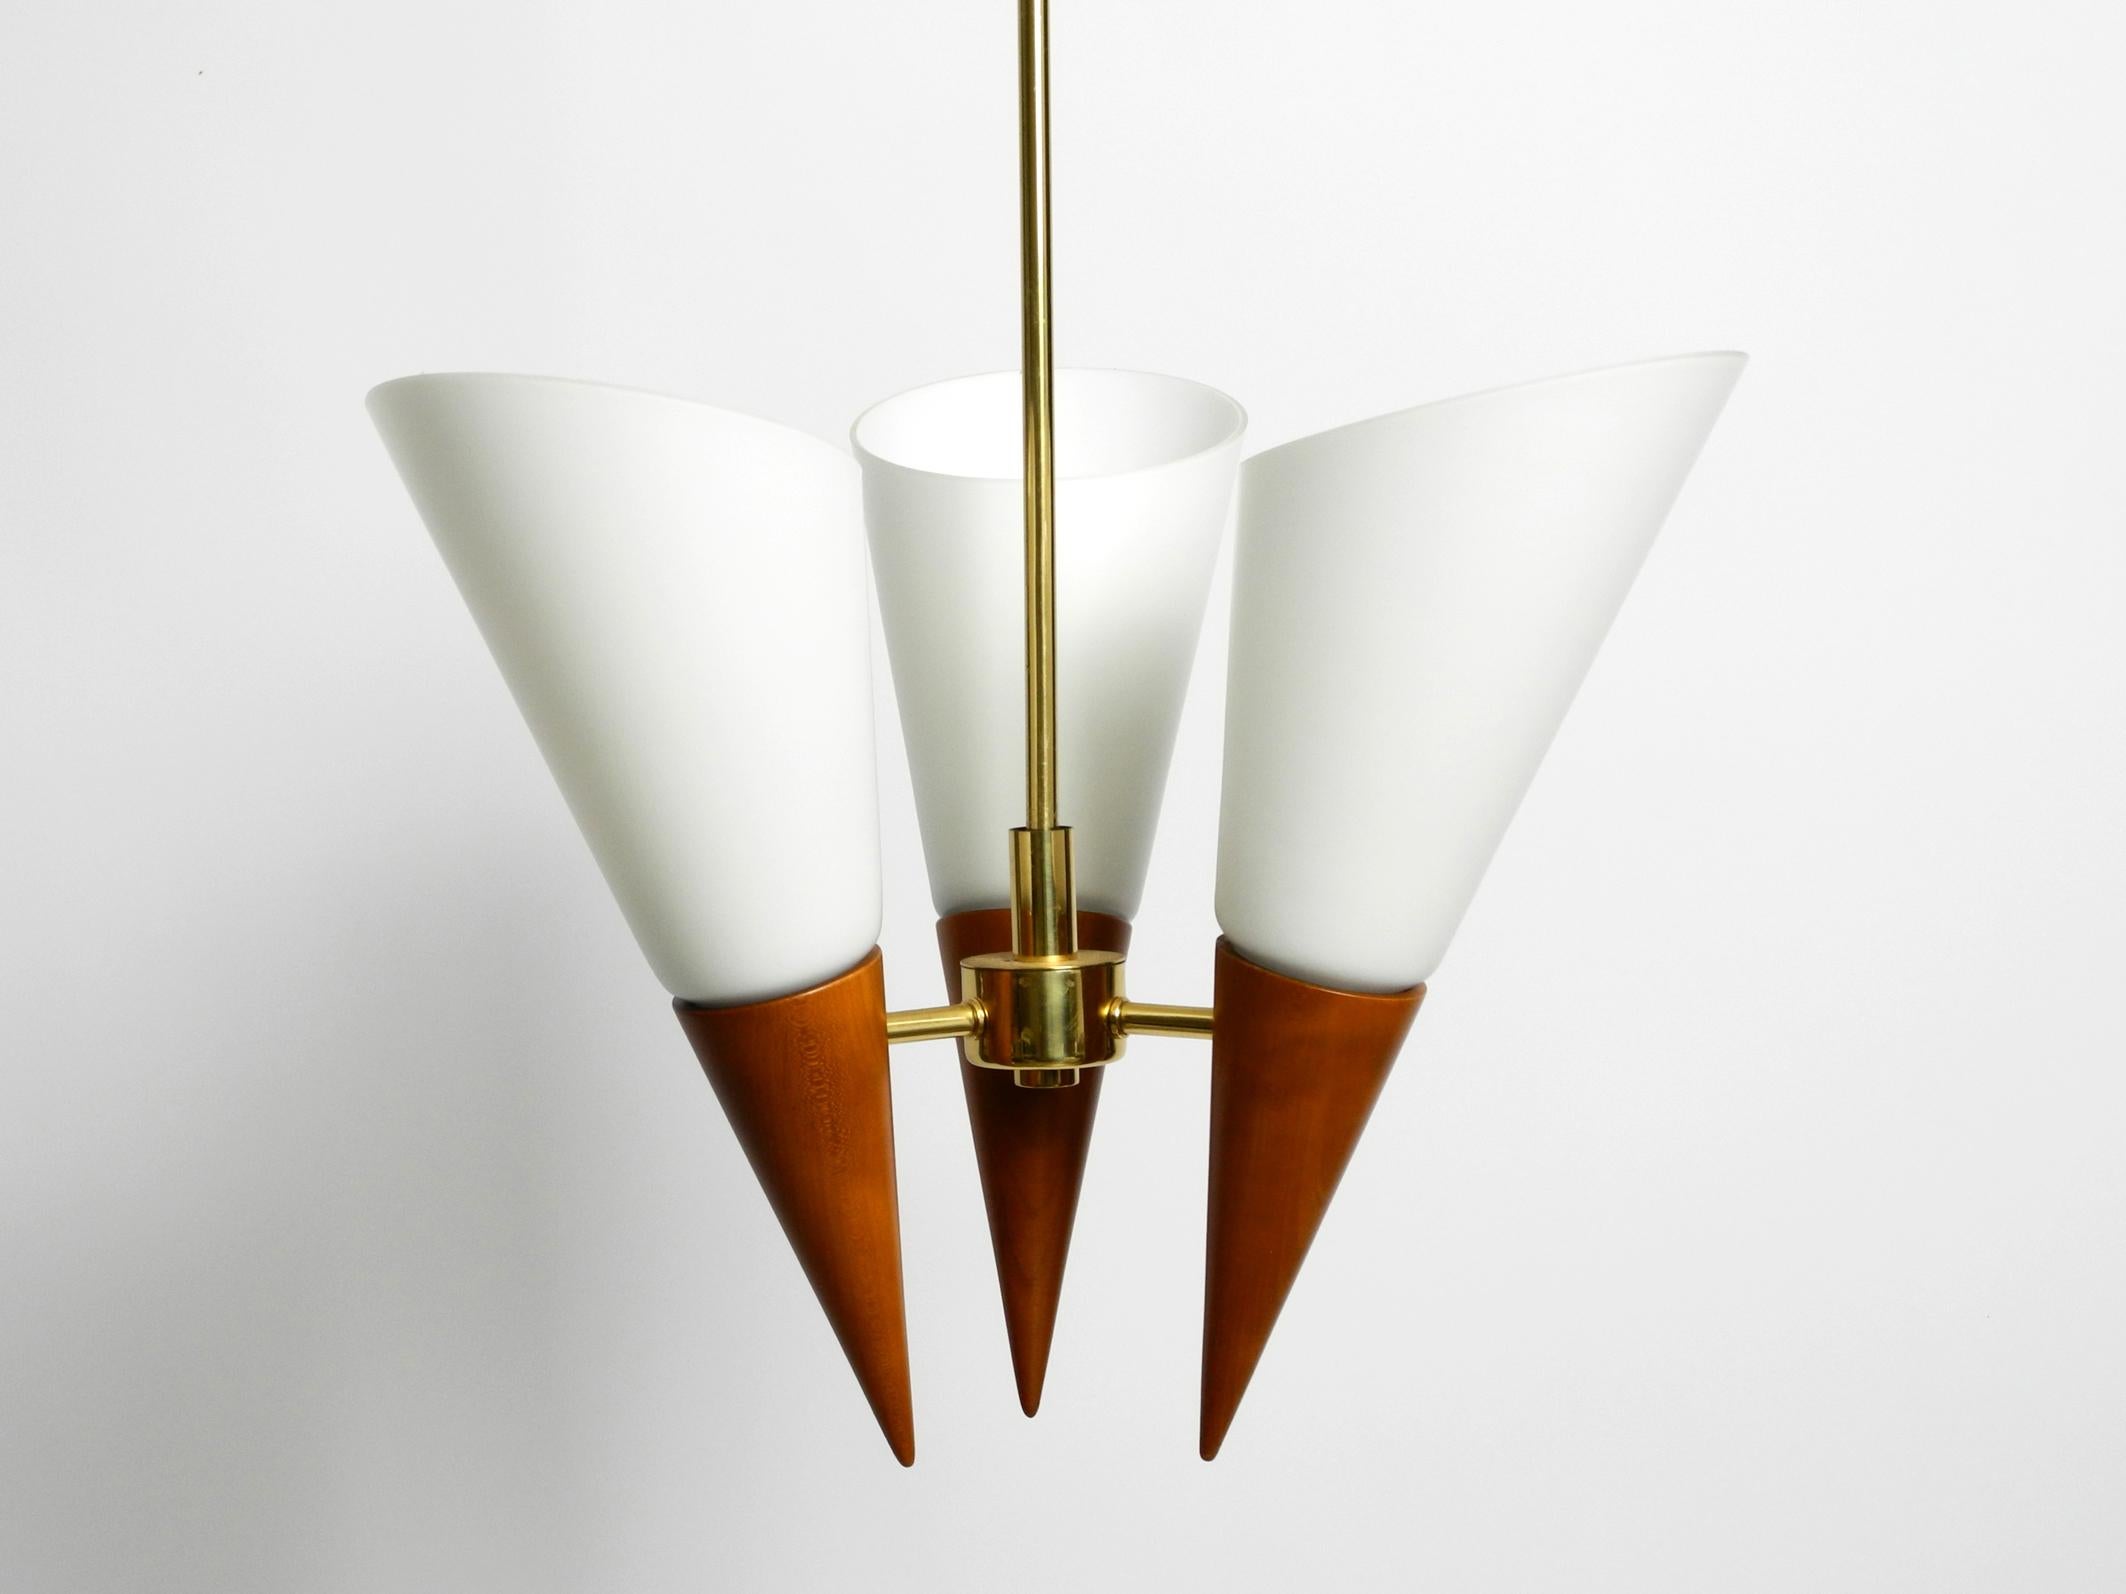 Schöne Deckenlampe aus den 1960er Jahren. Großartiges elegantes Design. Hergestellt in Deutschland.
Rahmen, Stange und Baldachin aus Messing.
Die Zapfen sind aus Kirschholz gefertigt. Mit großen, dicken Glasschirmen.
Eine sehr hochwertige Lampe für